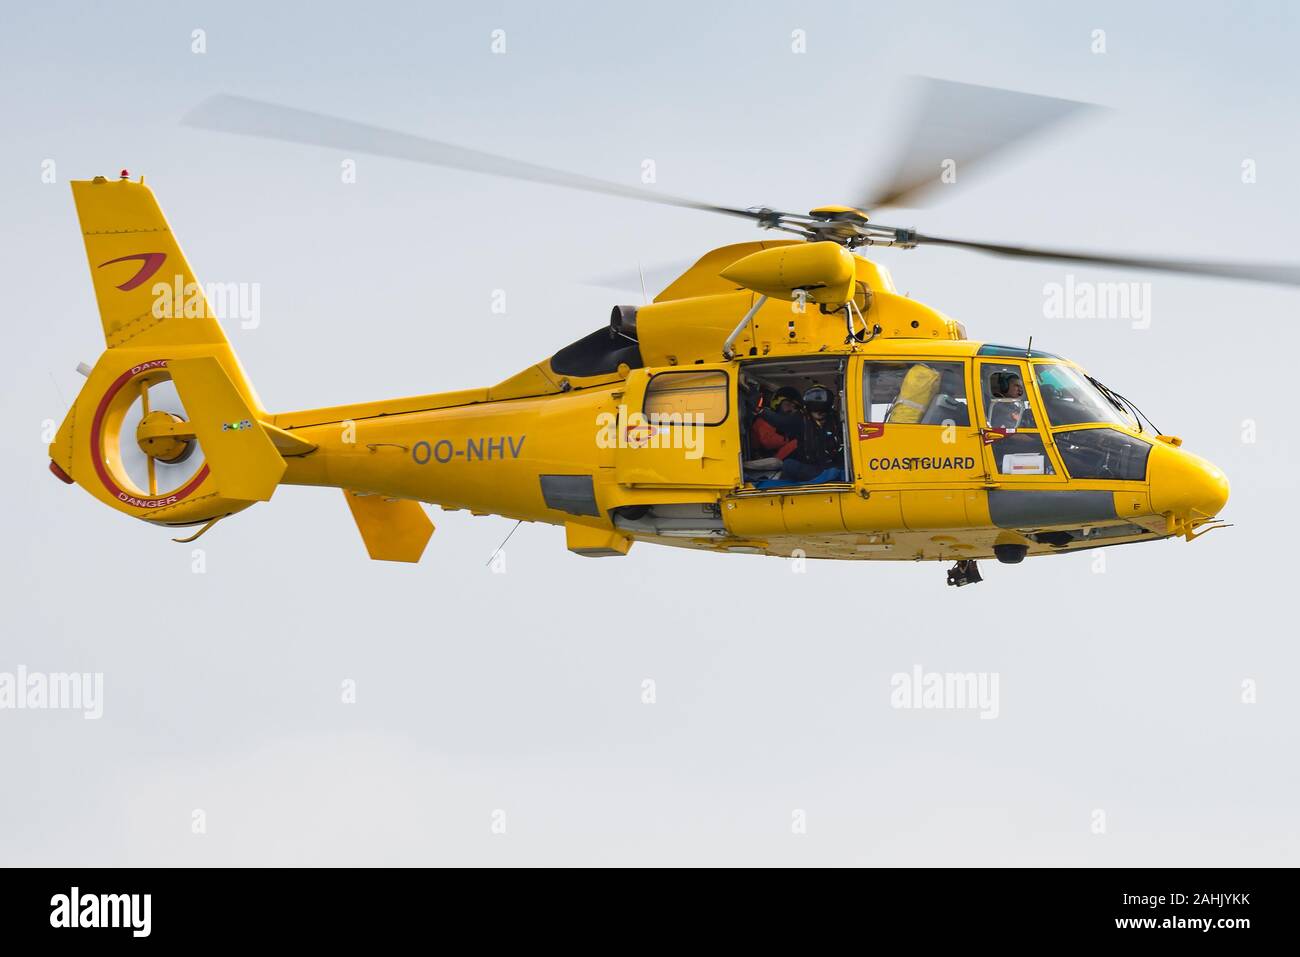 Un Eurocopter AS365 Dauphin d'hélicoptères de recherche et de sauvetage de l'exploitant d'hélicoptères civils Noordzee Helikopters Vlaanderen (NHV). Banque D'Images